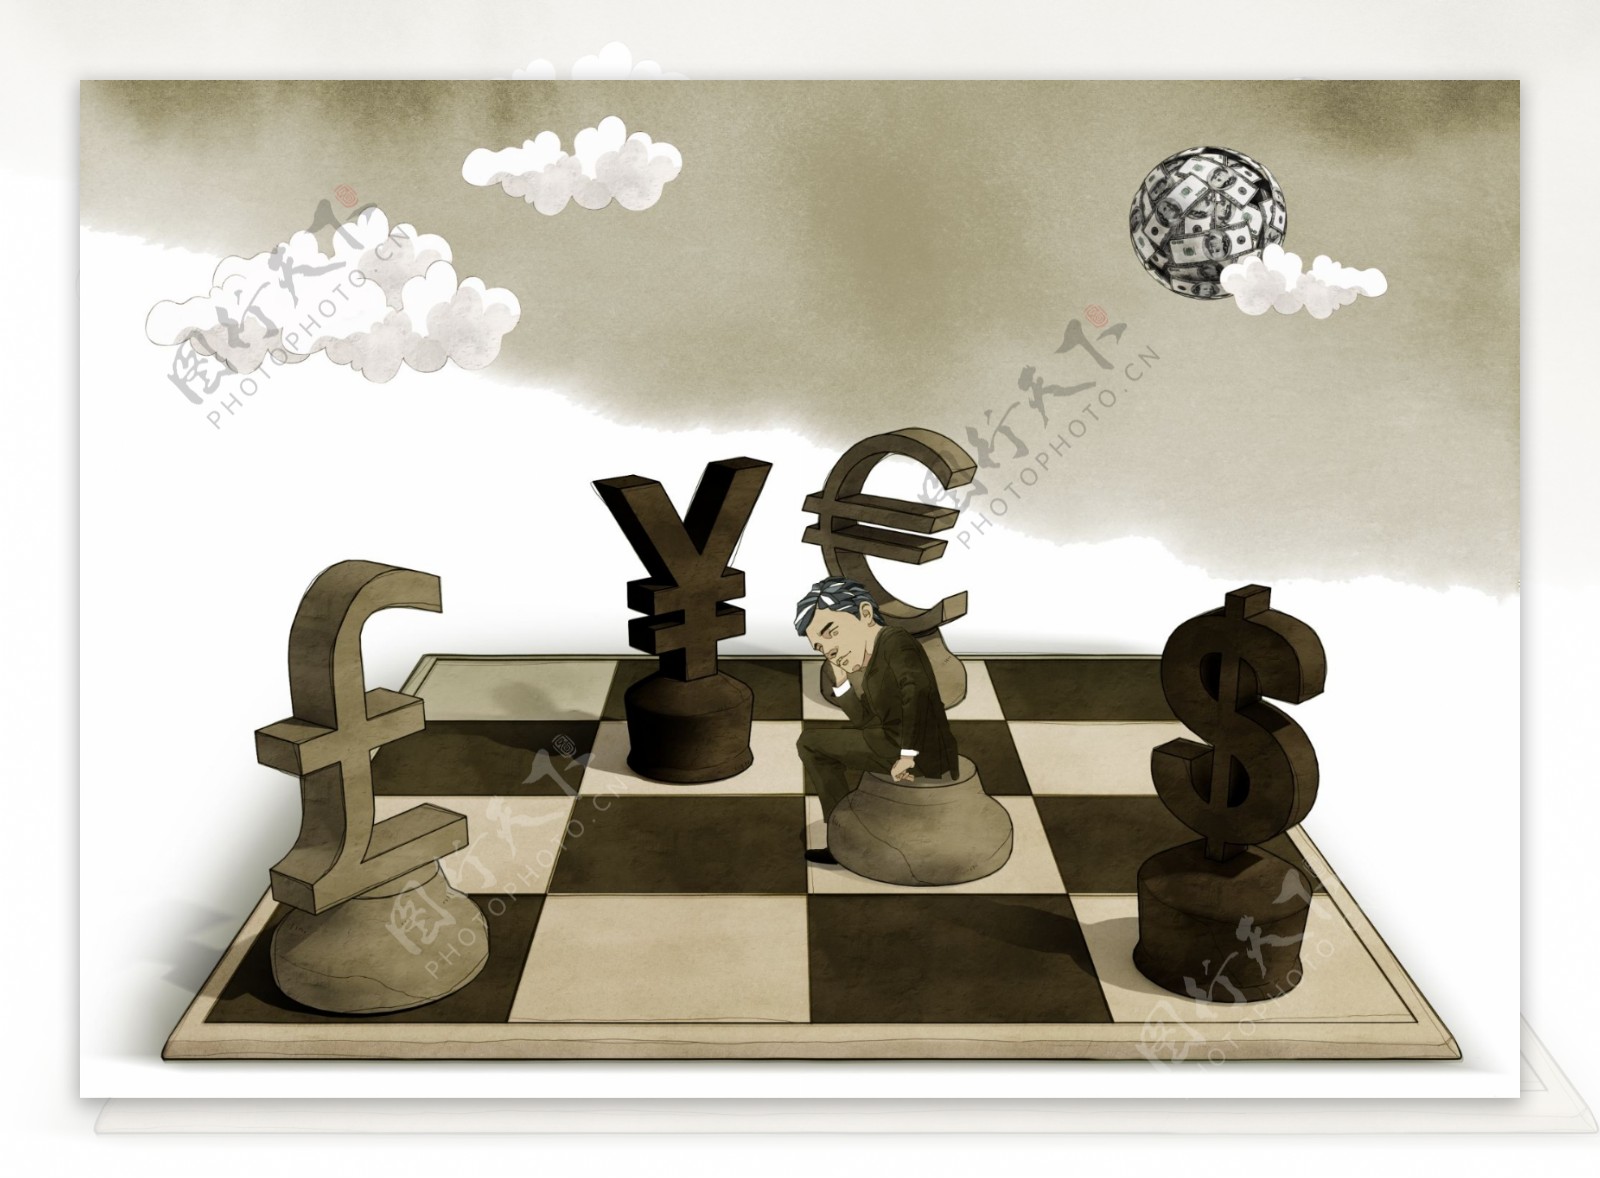 国际象棋插画